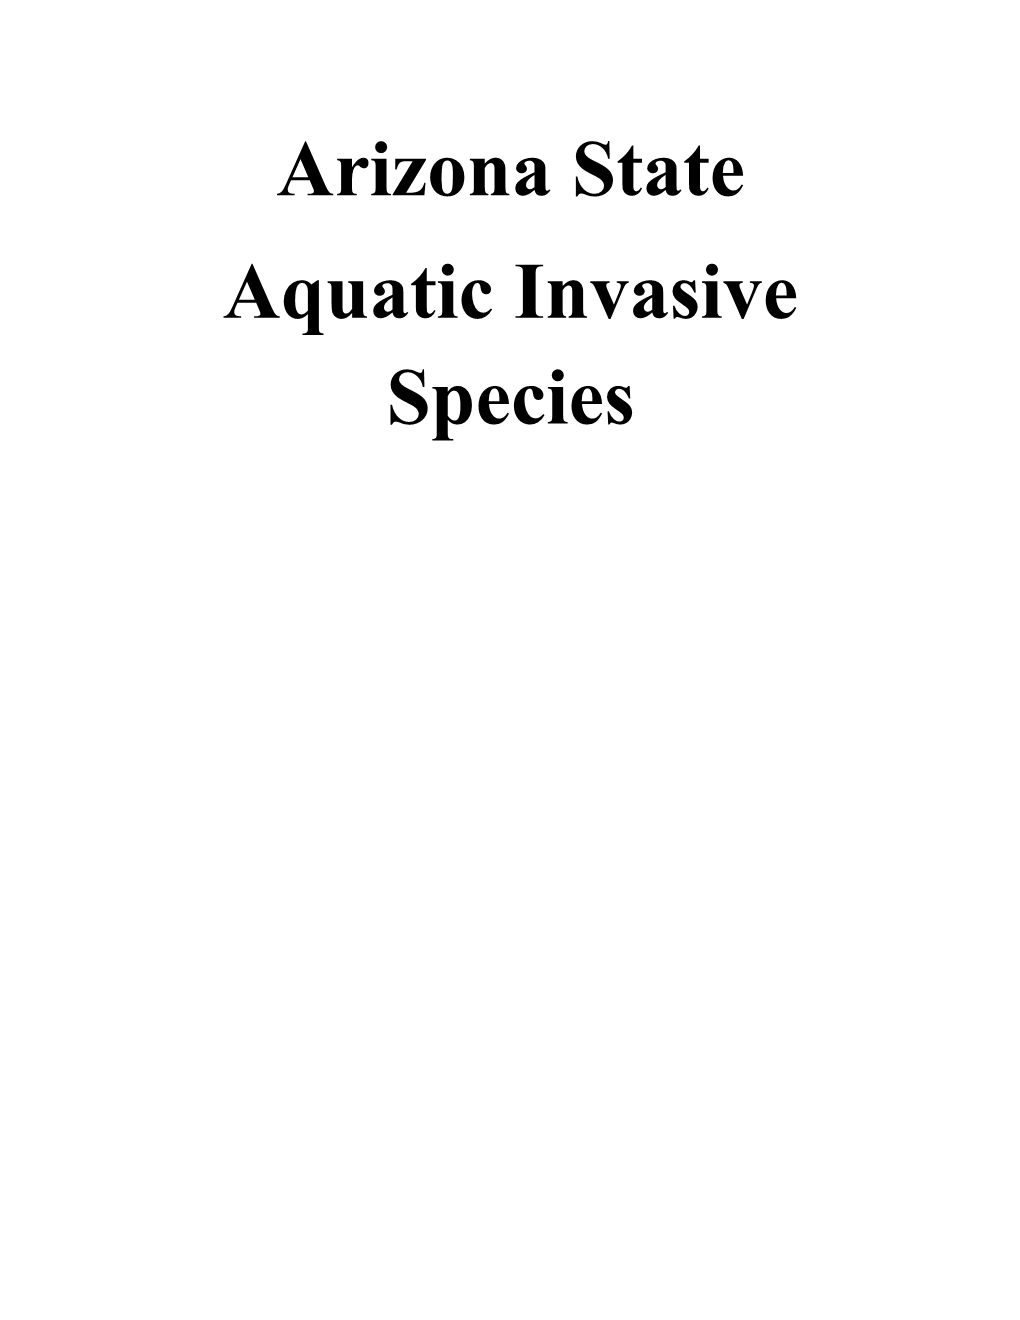 Aquatic Invasive Species